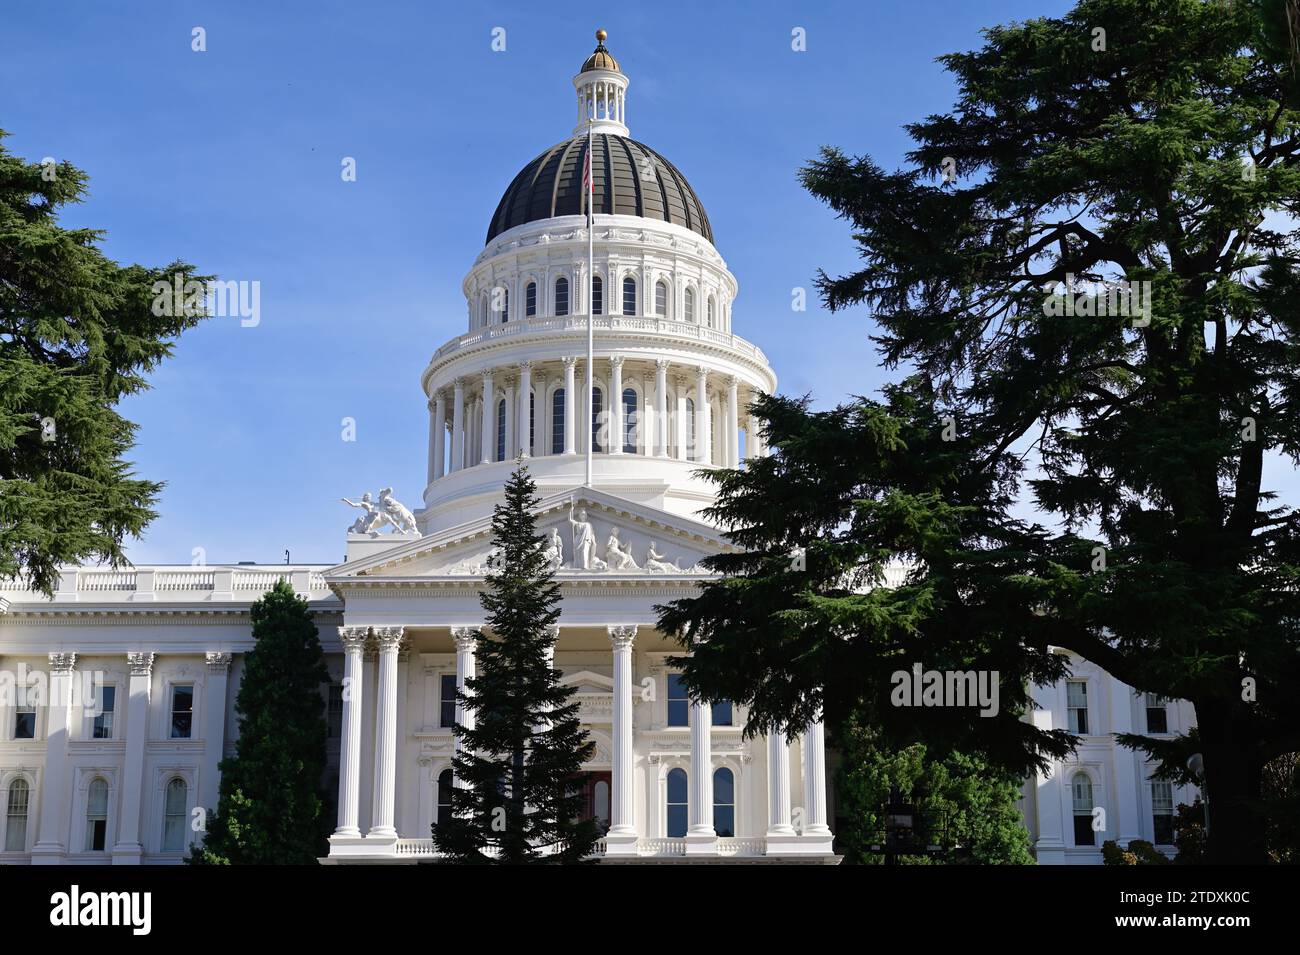 Sacramento, Kalifornien, USA. Das California State Capitol Building, das neoklassizistische Gebäude, wurde zwischen 1861 und 1874 fertiggestellt. Stockfoto